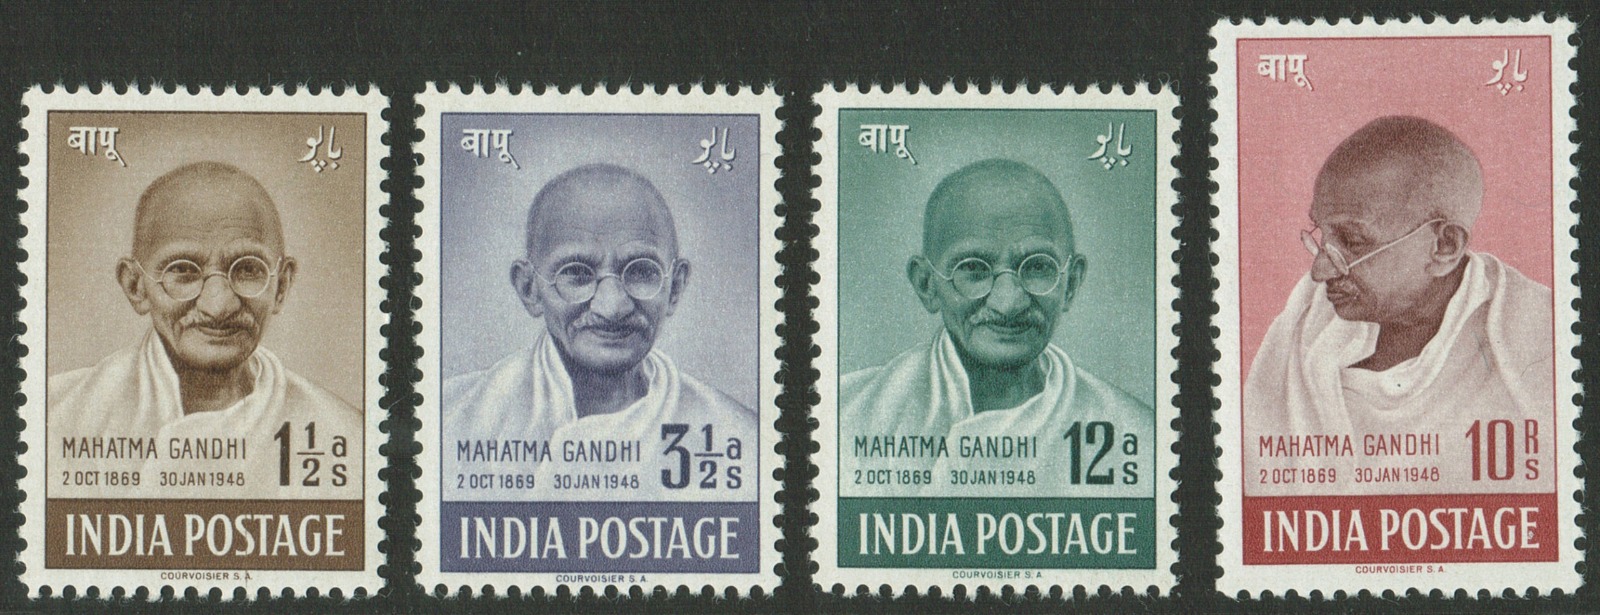 India 1948 Mahatma Gandhi 4v Set MNH White Gum Catalog